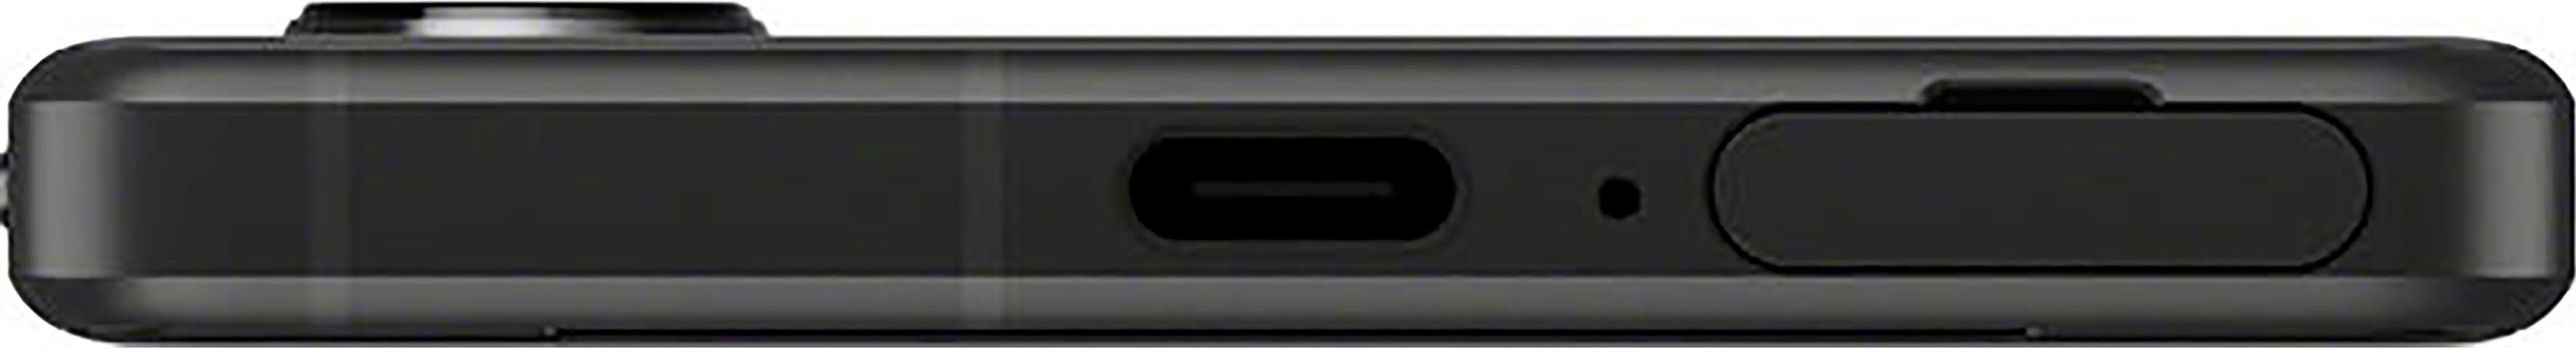 IV Xperia GB 5 MP 12 Sony Smartphone Kamera) 128 (15,49 cm/6,1 schwarz Speicherplatz, Zoll,